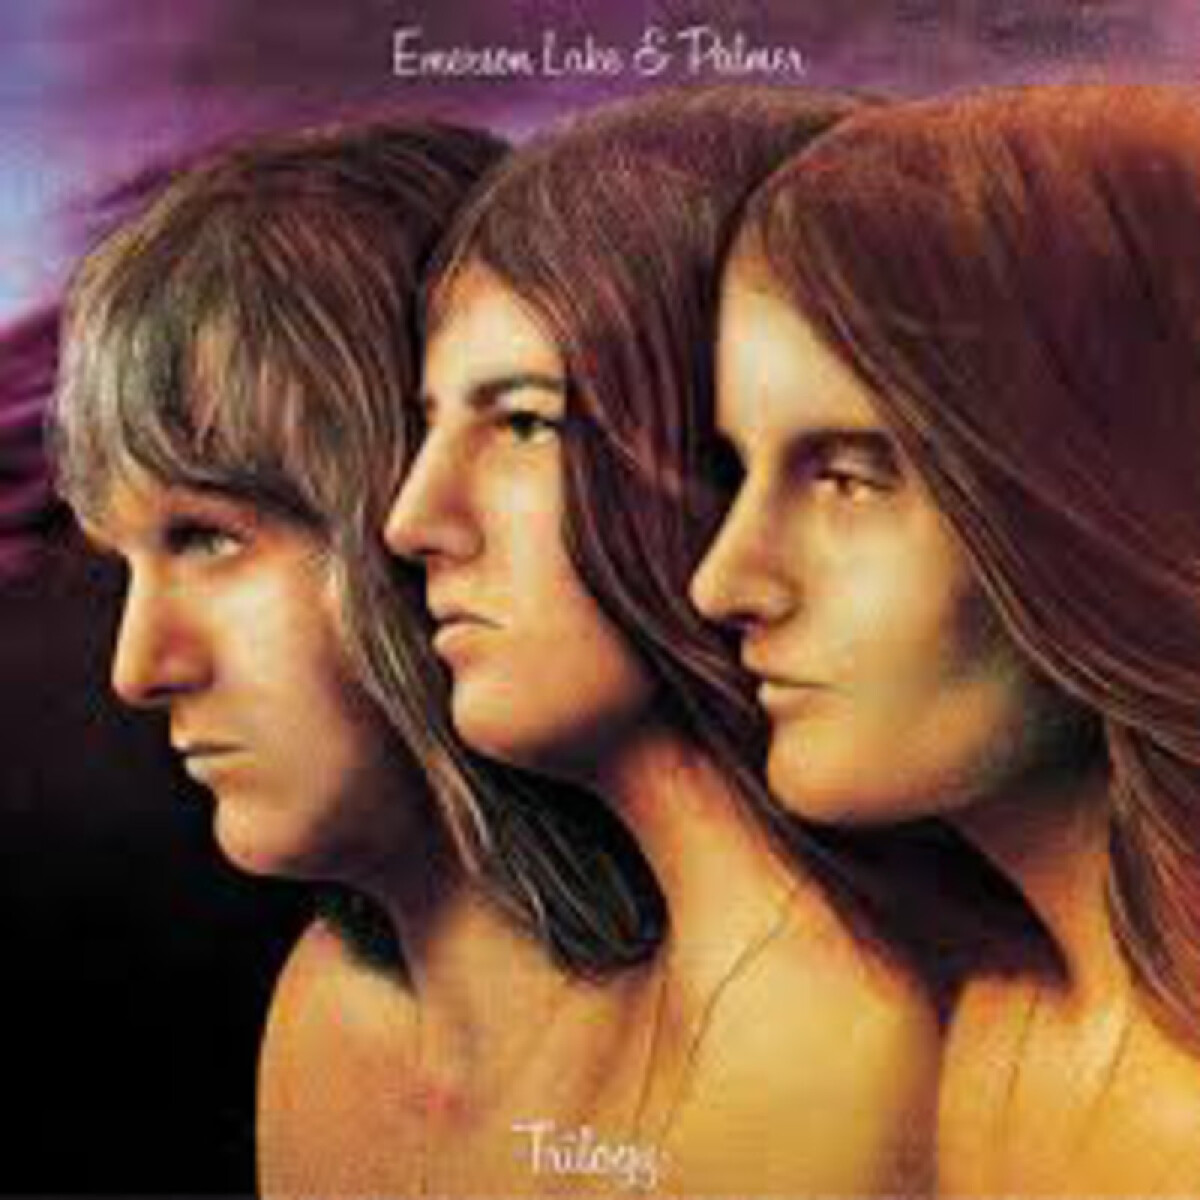 Emerson Lake & Palmer-trilogy - Vinilo 